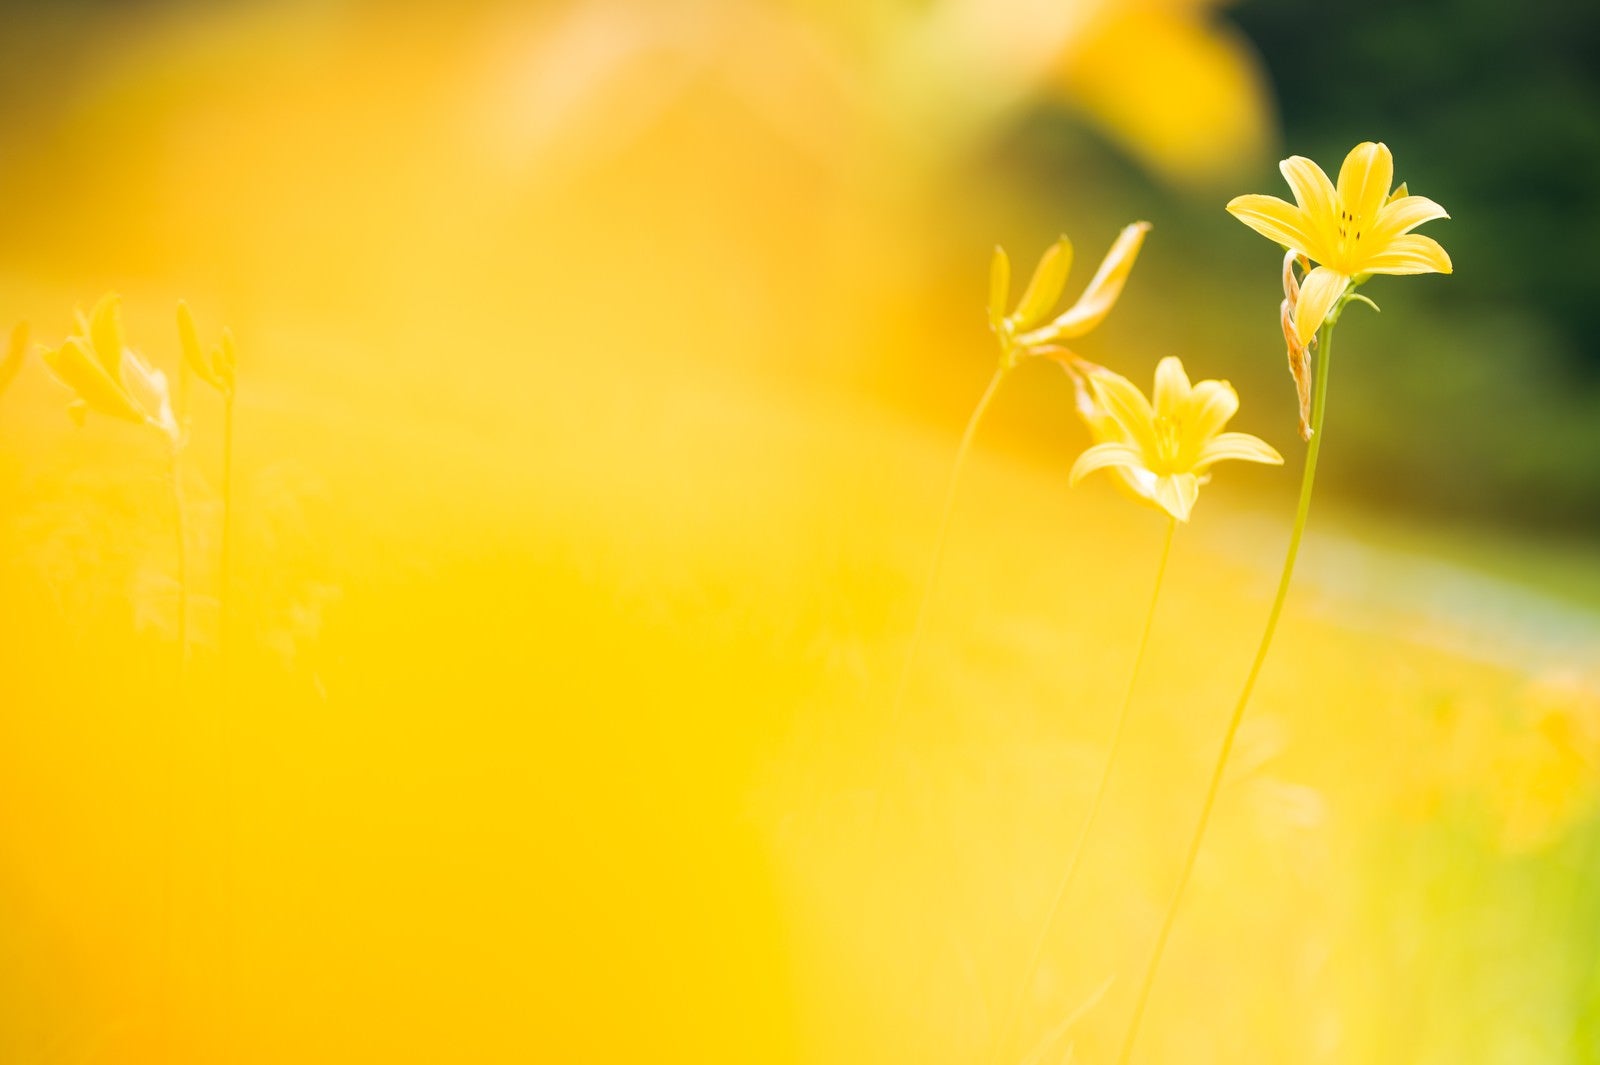 「キスゲの花」の写真